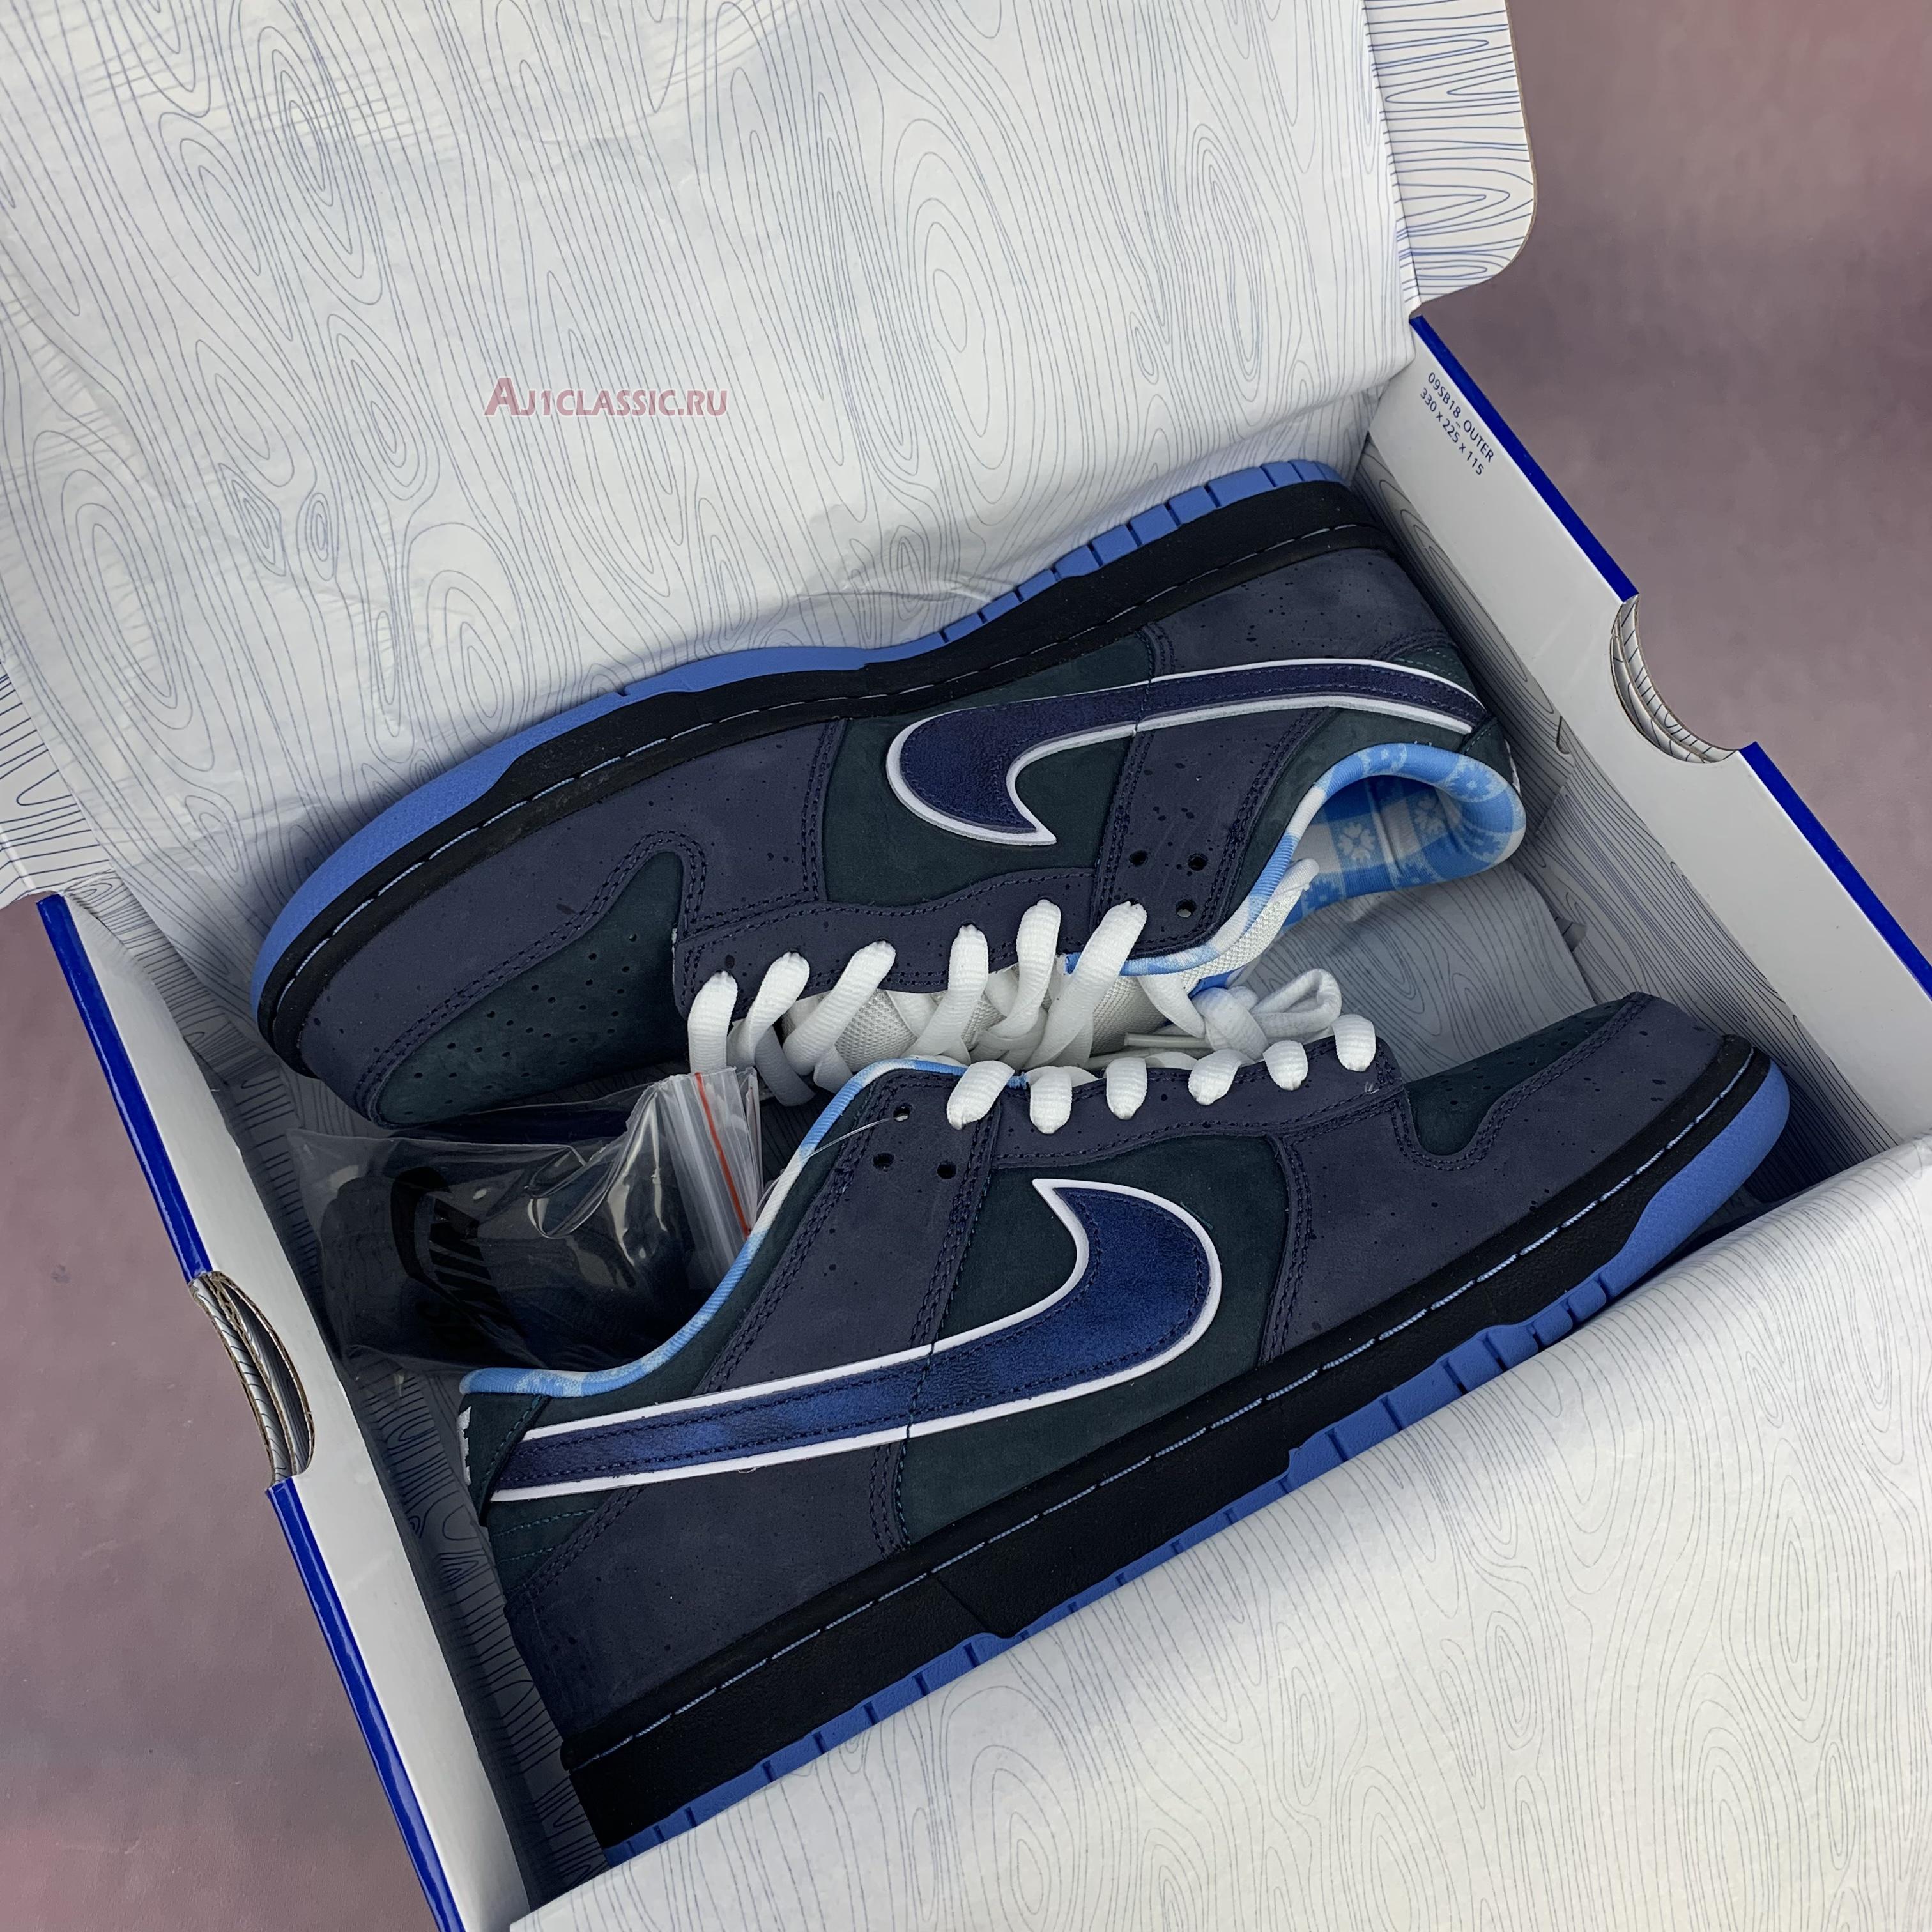 Nike Dunk Low Premium SB Blue Lobster 313170-342-02 Nightshade/Dark Slate Sneakers